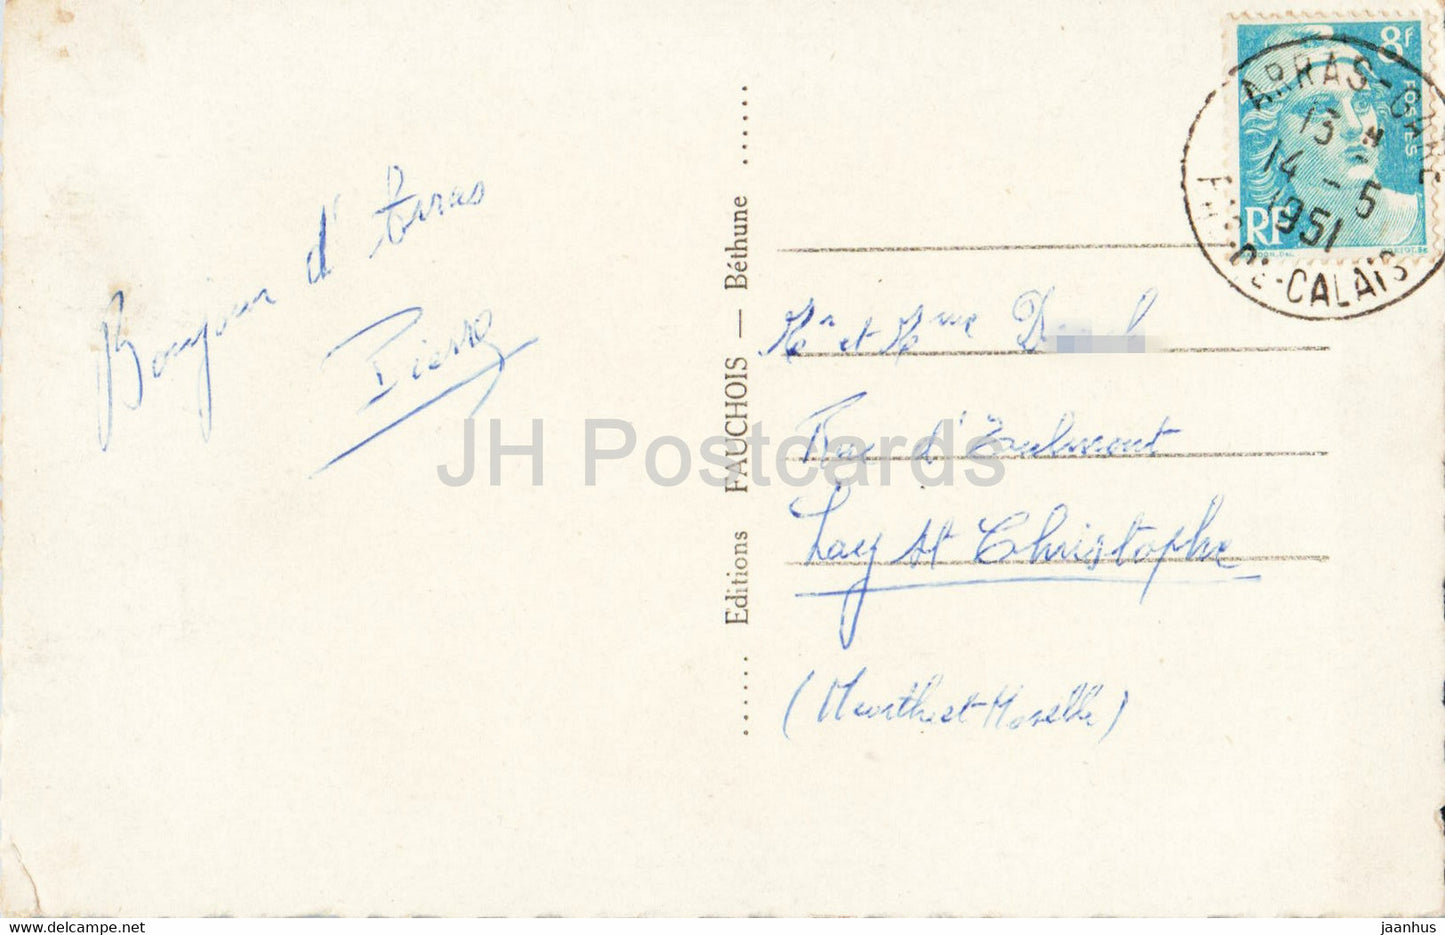 L'Ami Bidasse vous envoie son coeur d'Arras - chef lieu du Pas de Calais - carte postale ancienne - 1951 - France - occasion